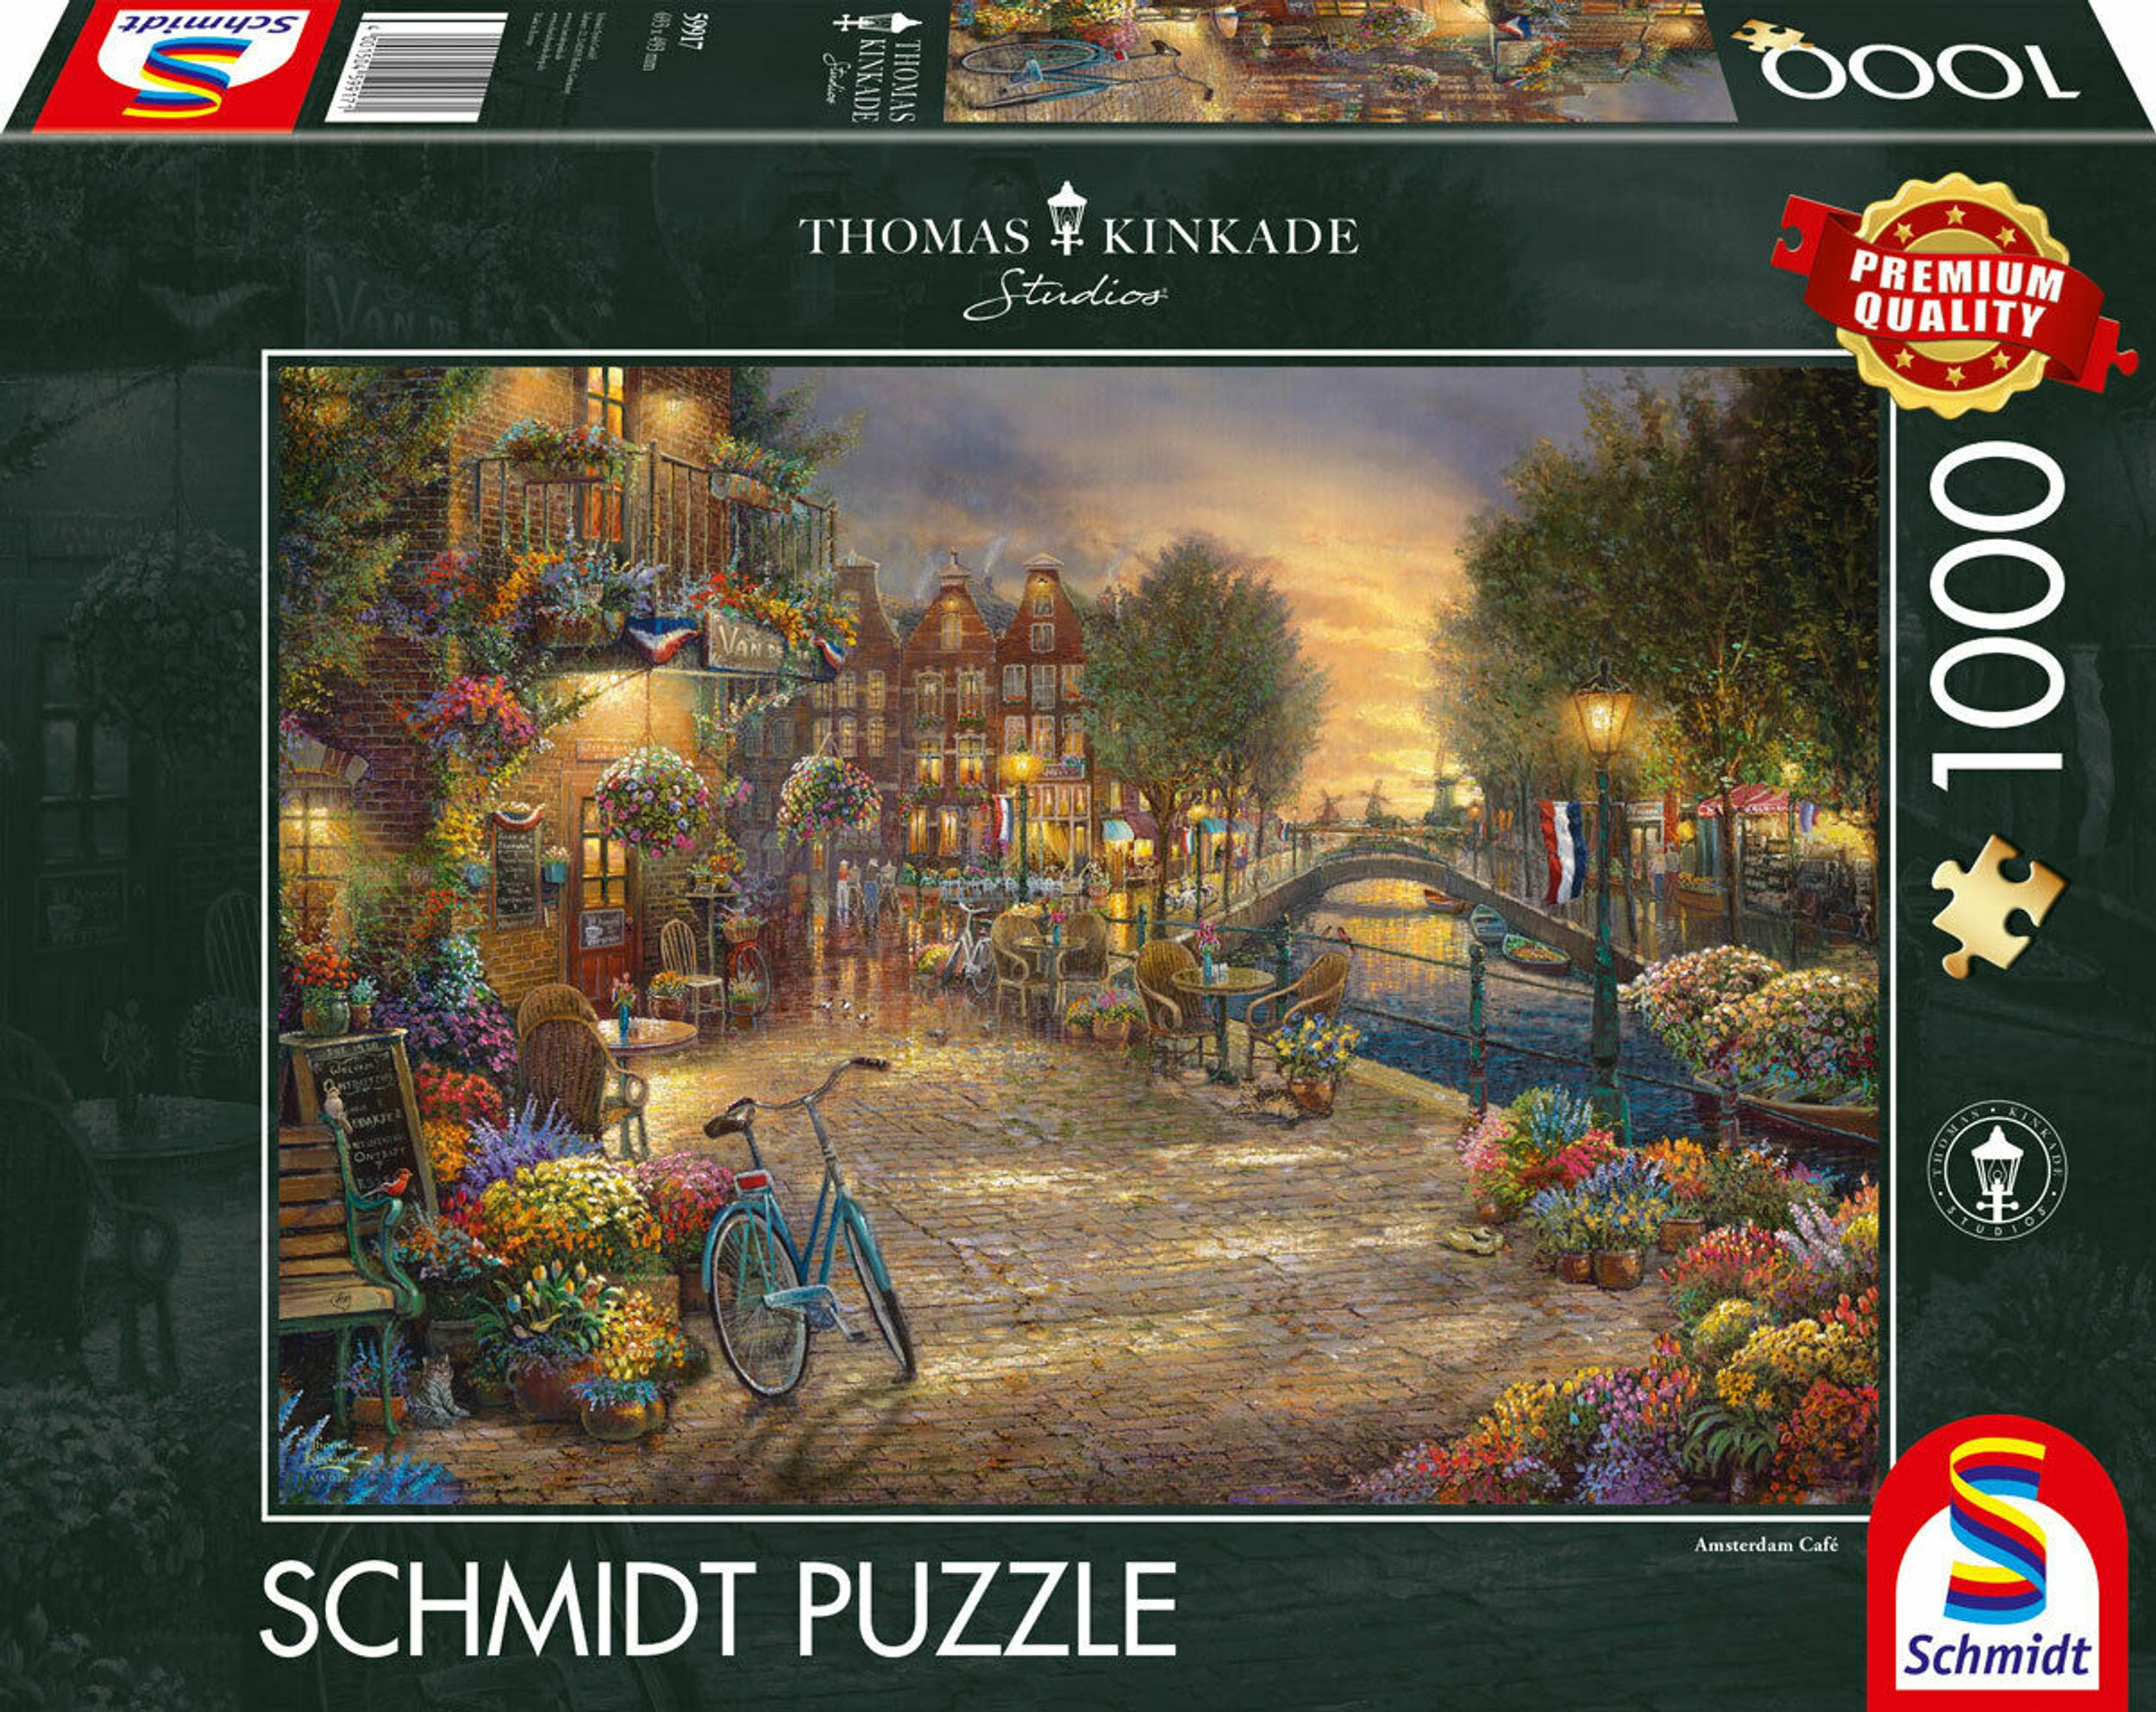 SCHMIDT Puzzle SPIELE Amsterdam